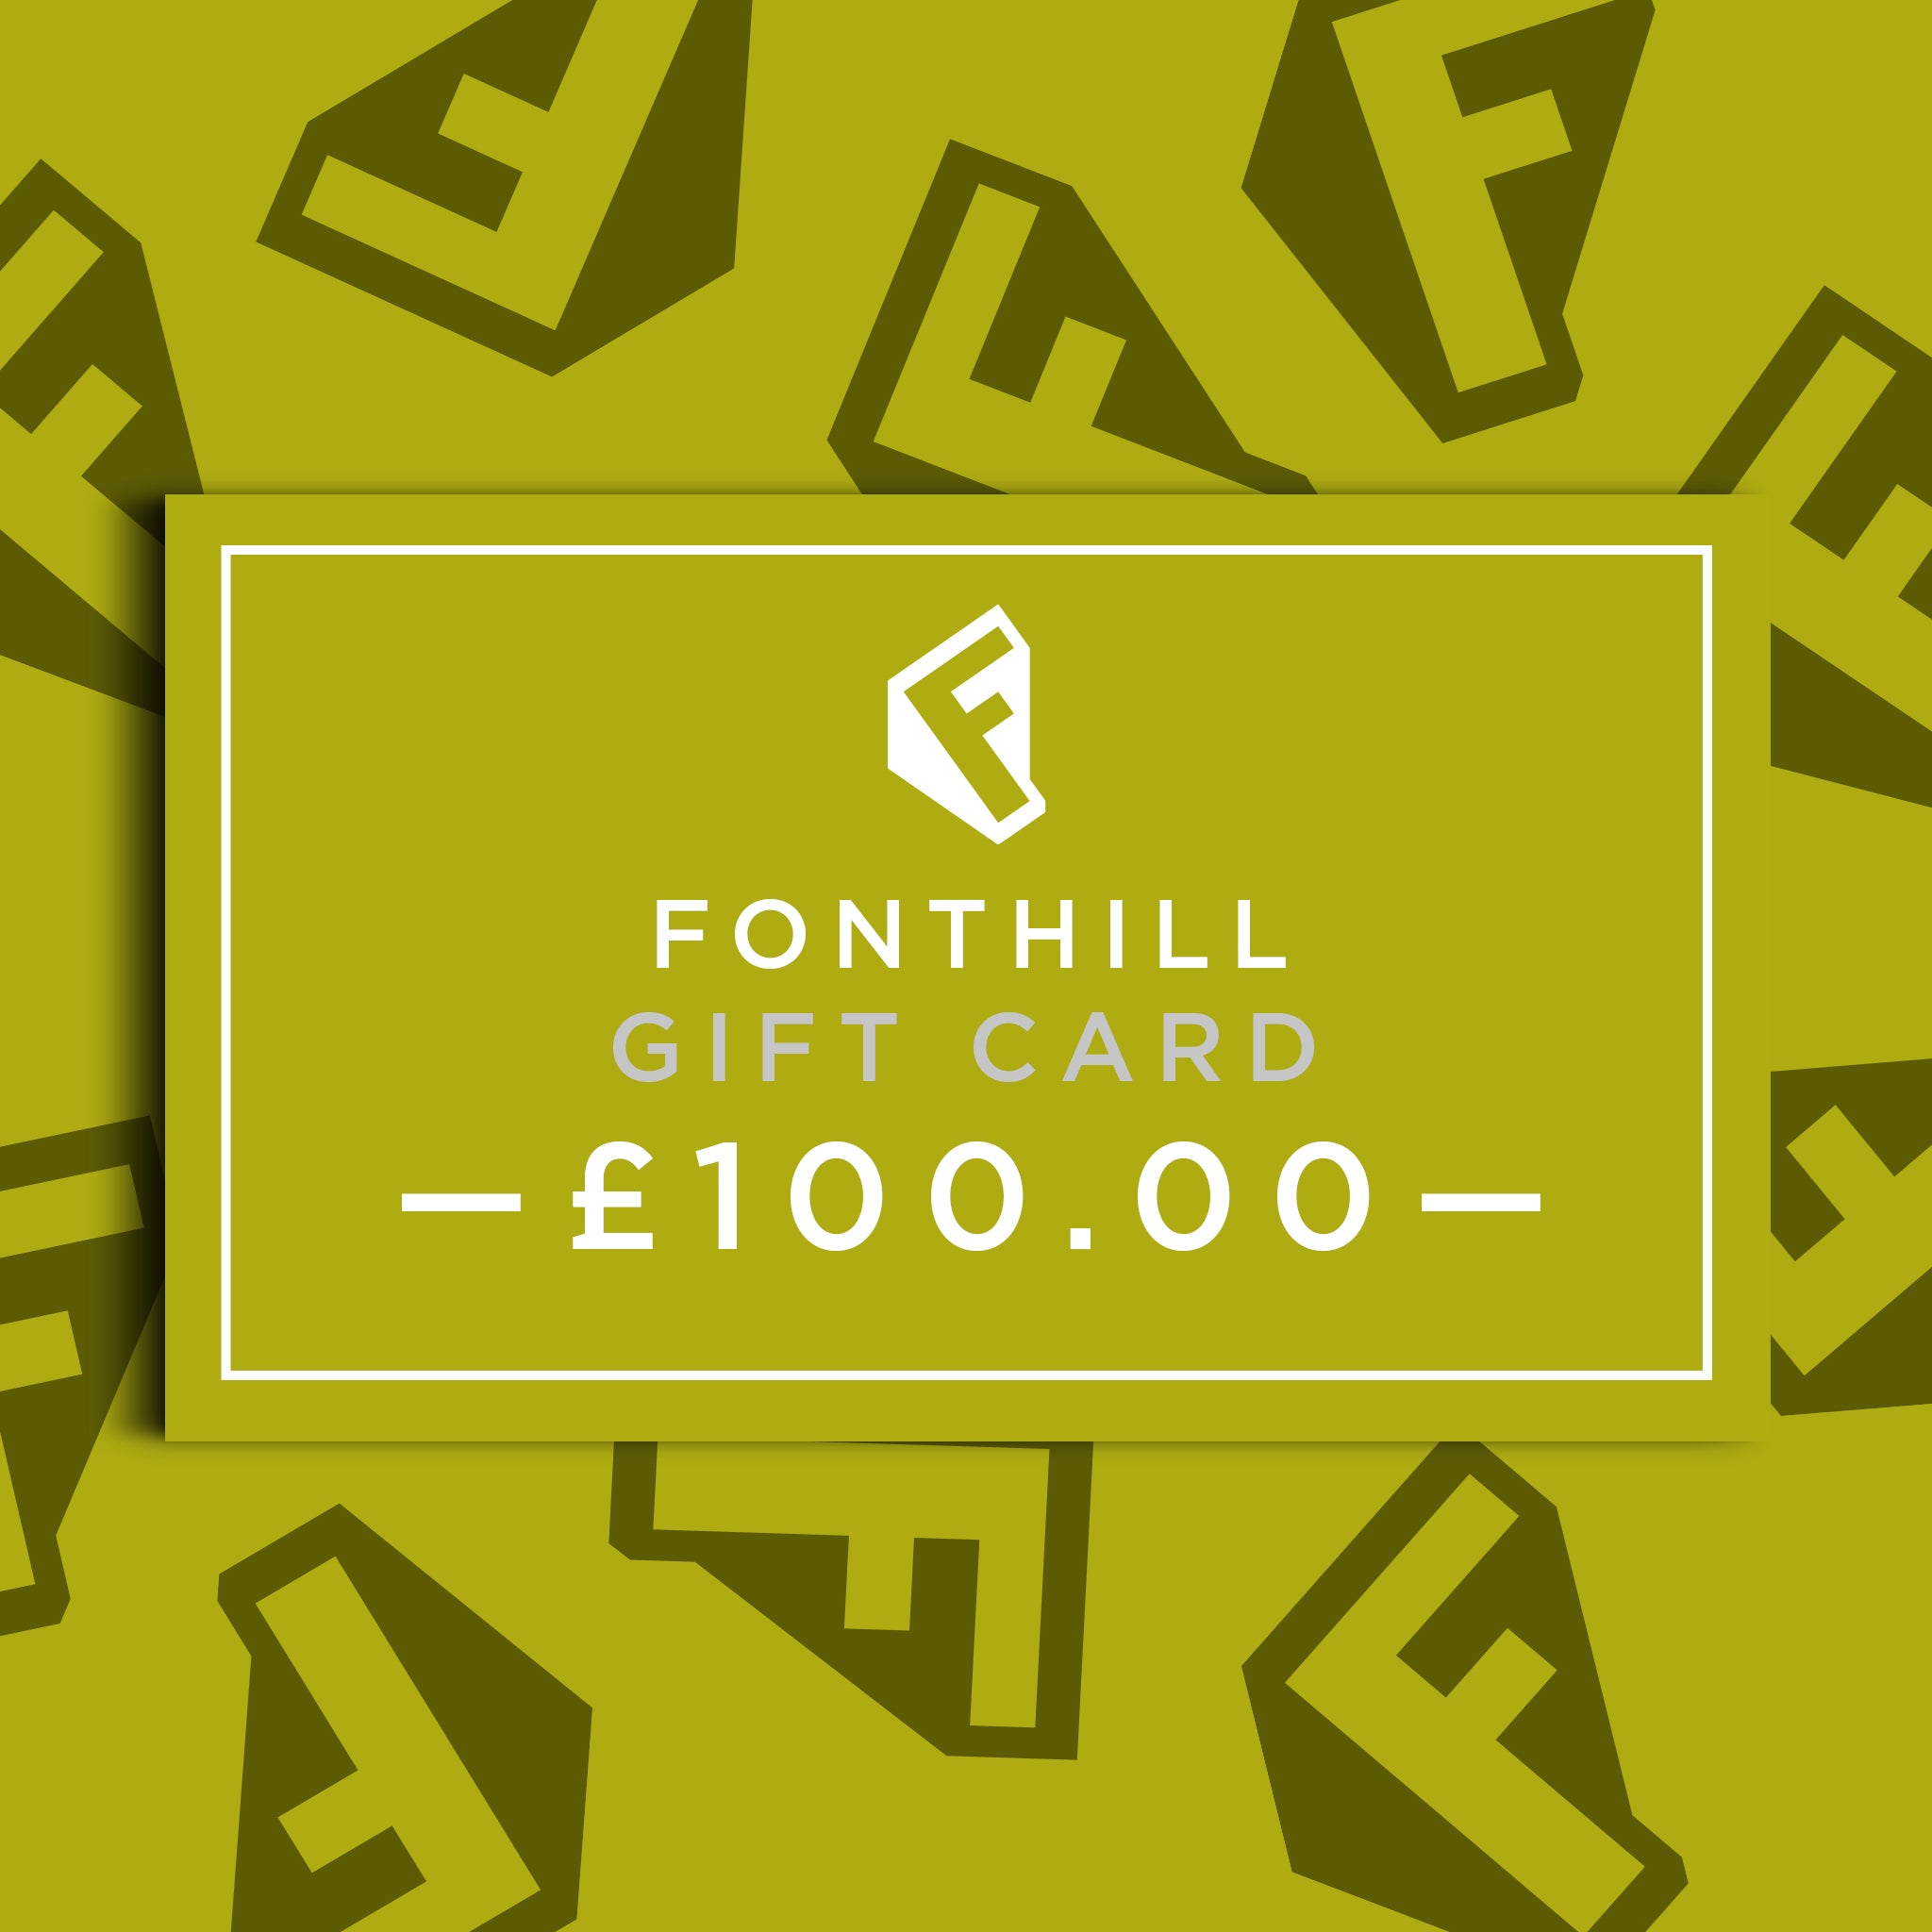 Fonthill Media £100.00 Gift Card